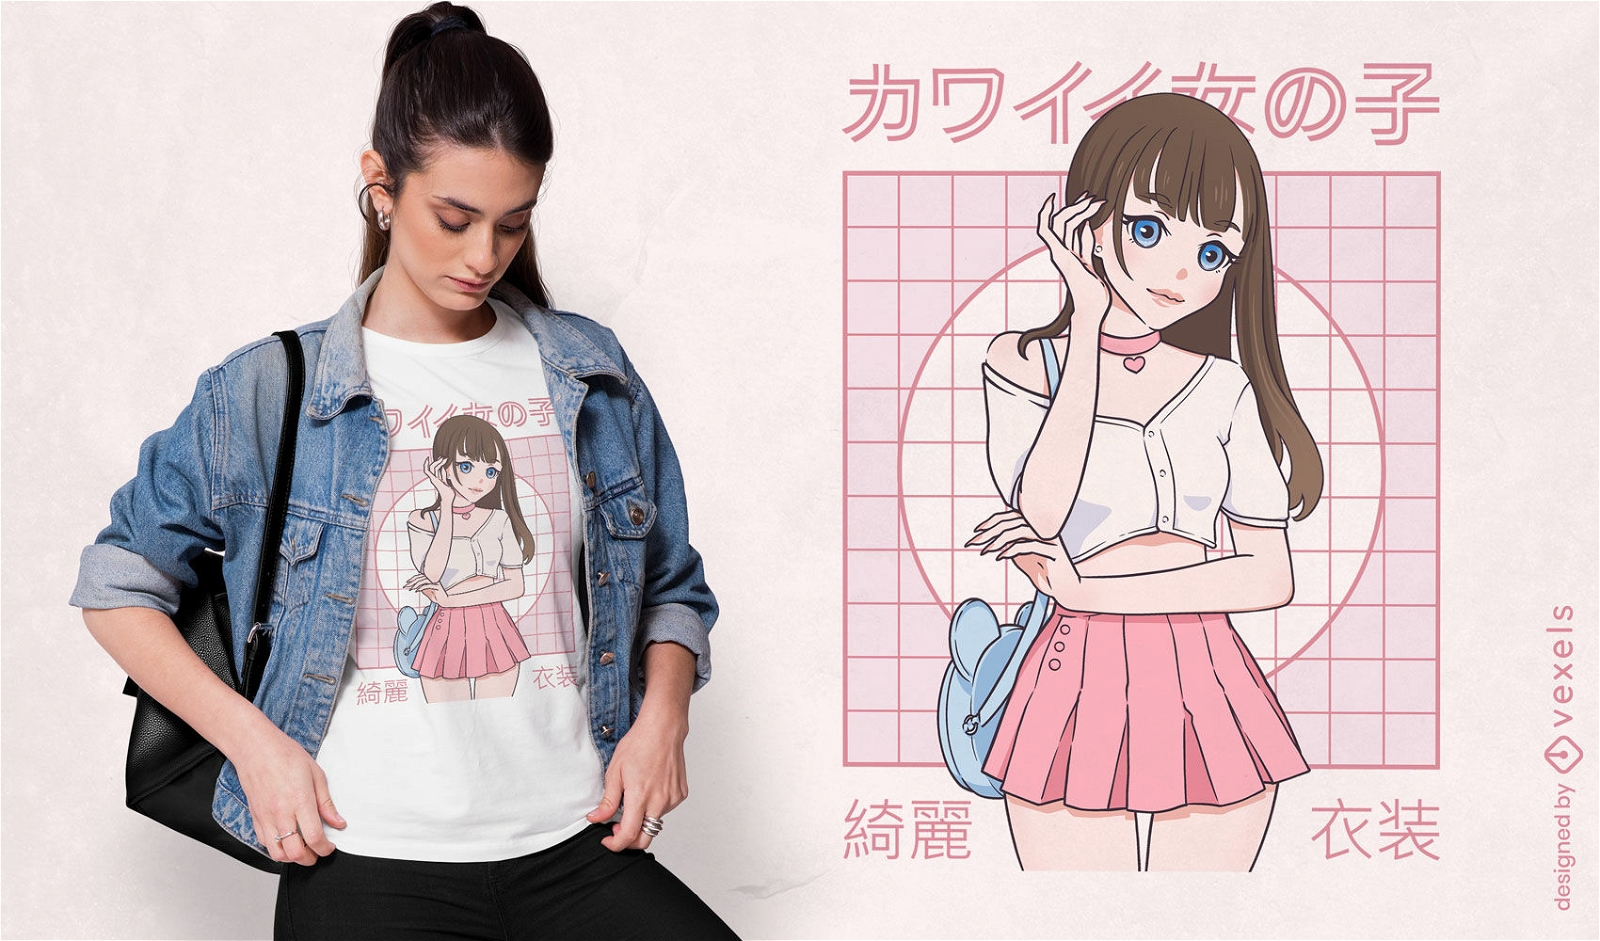 Anime japanese girl model t-shirt design